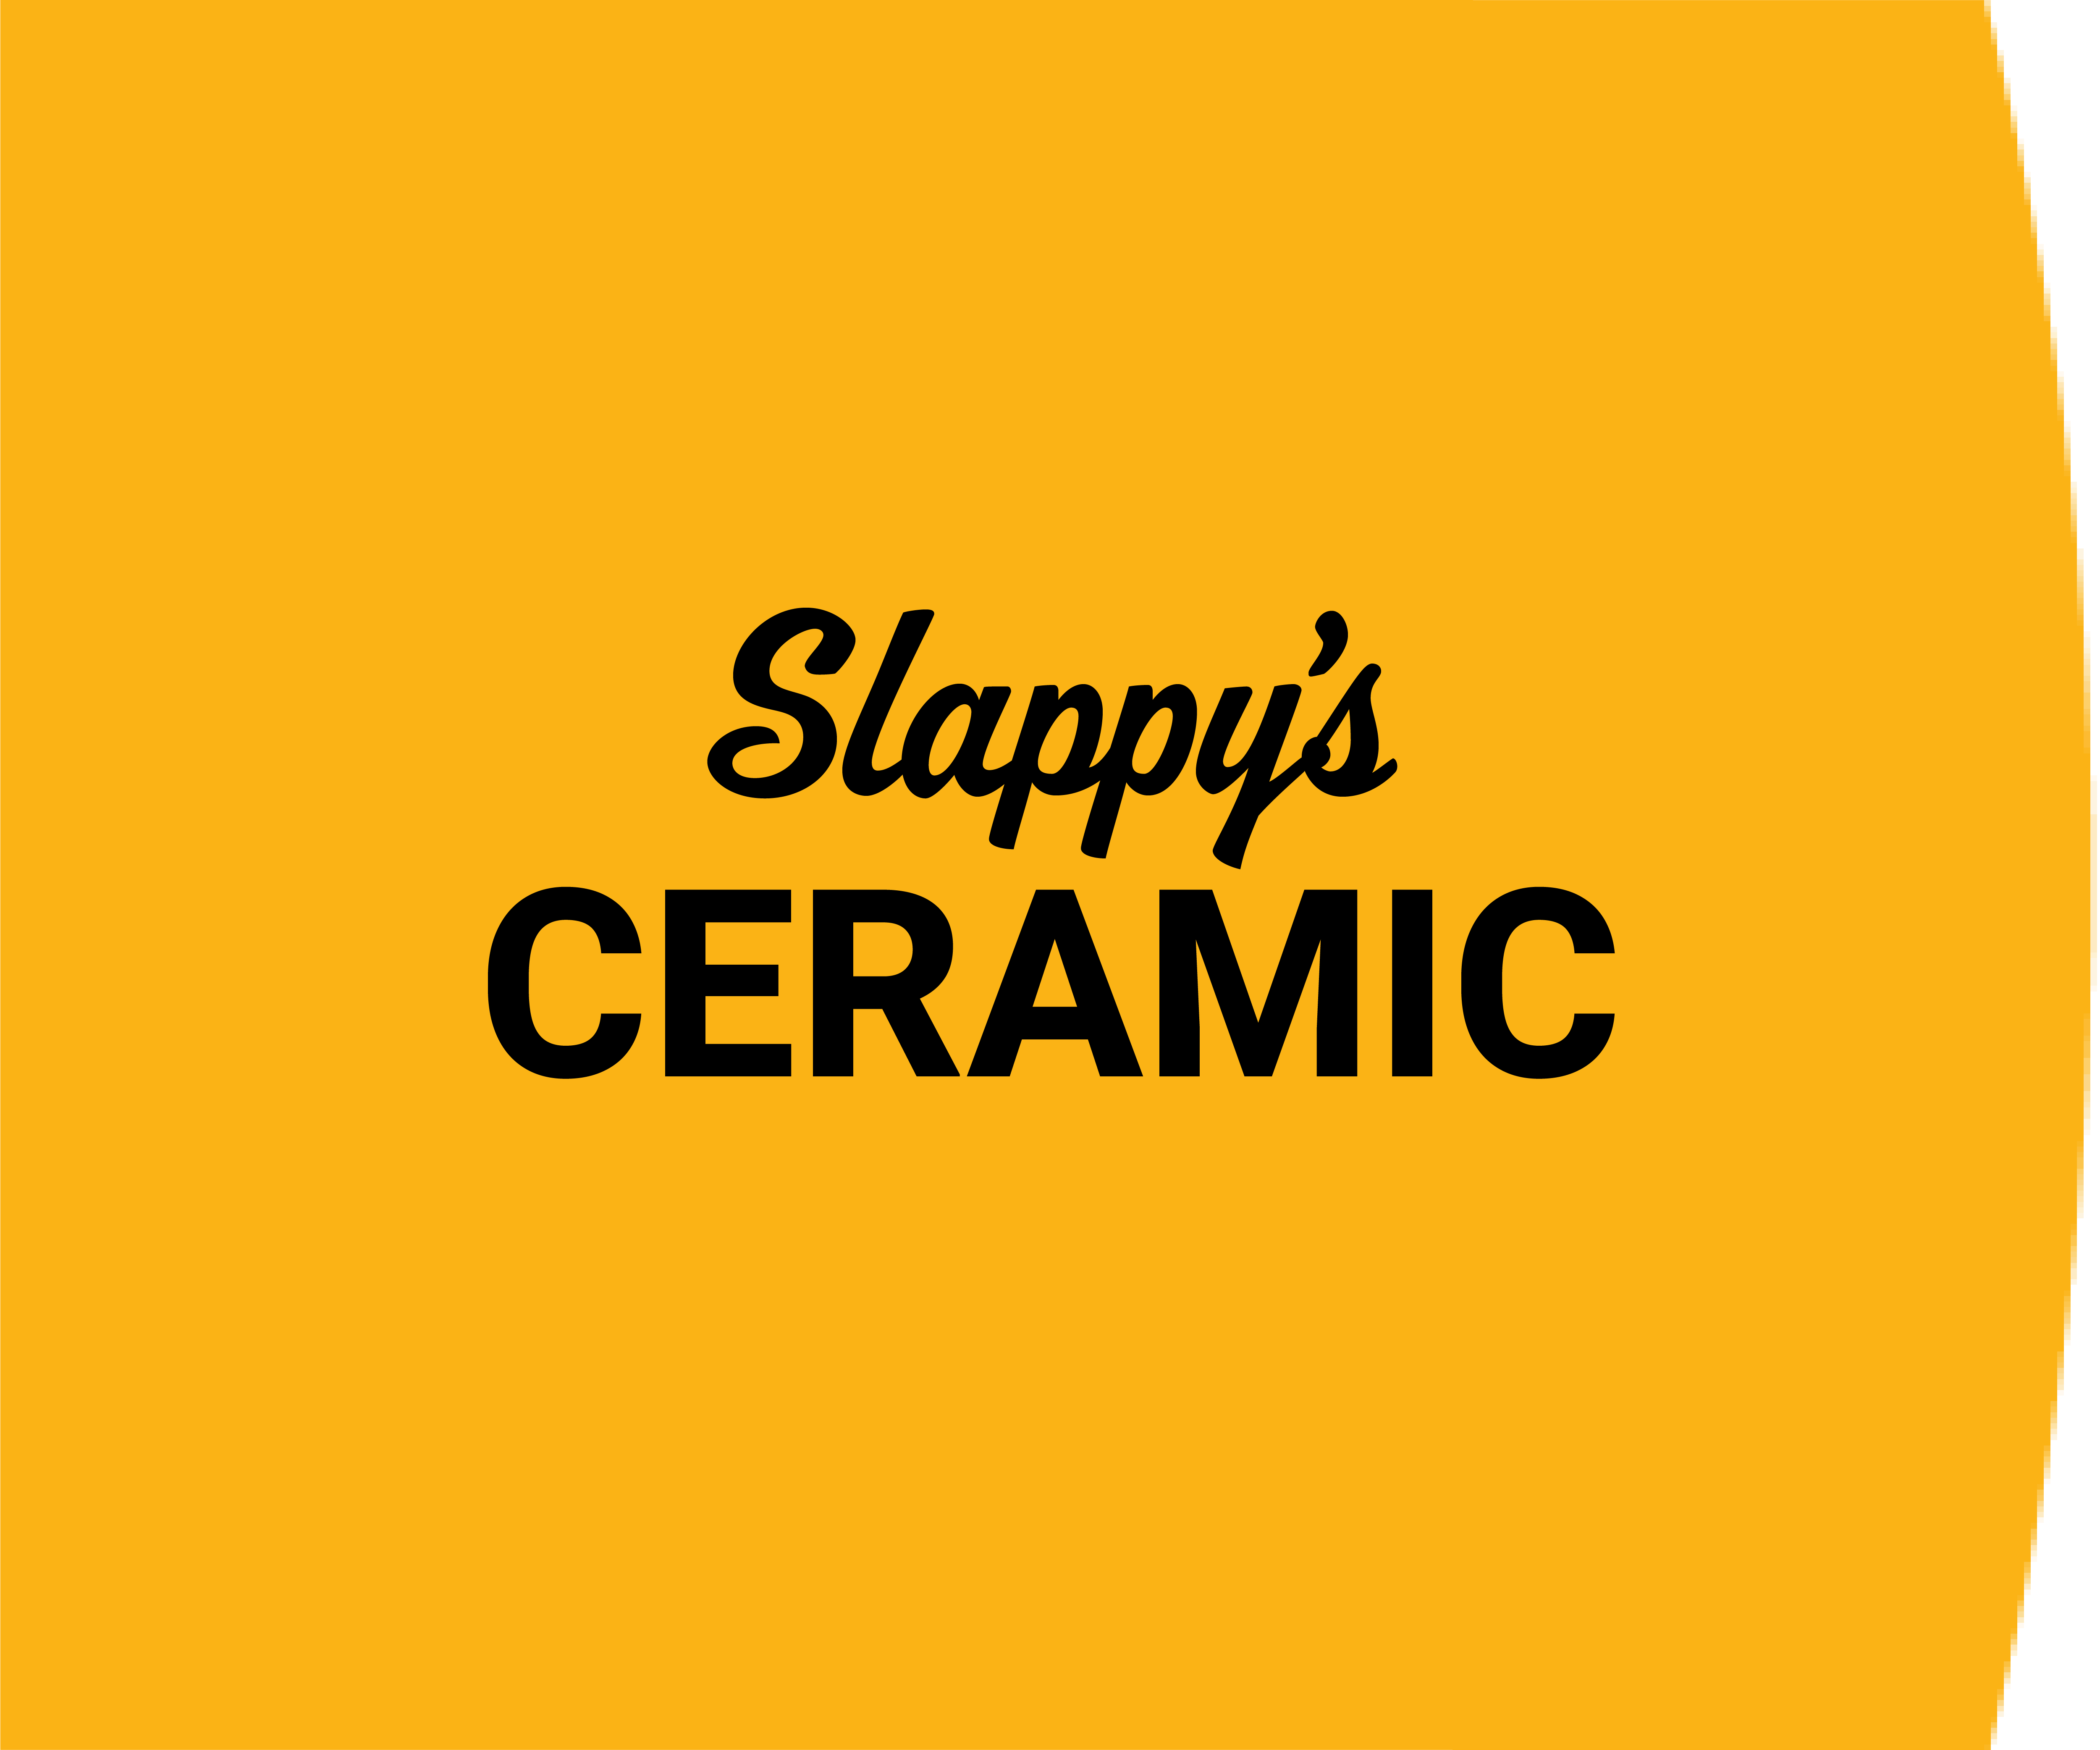 Slappy's Ceramic